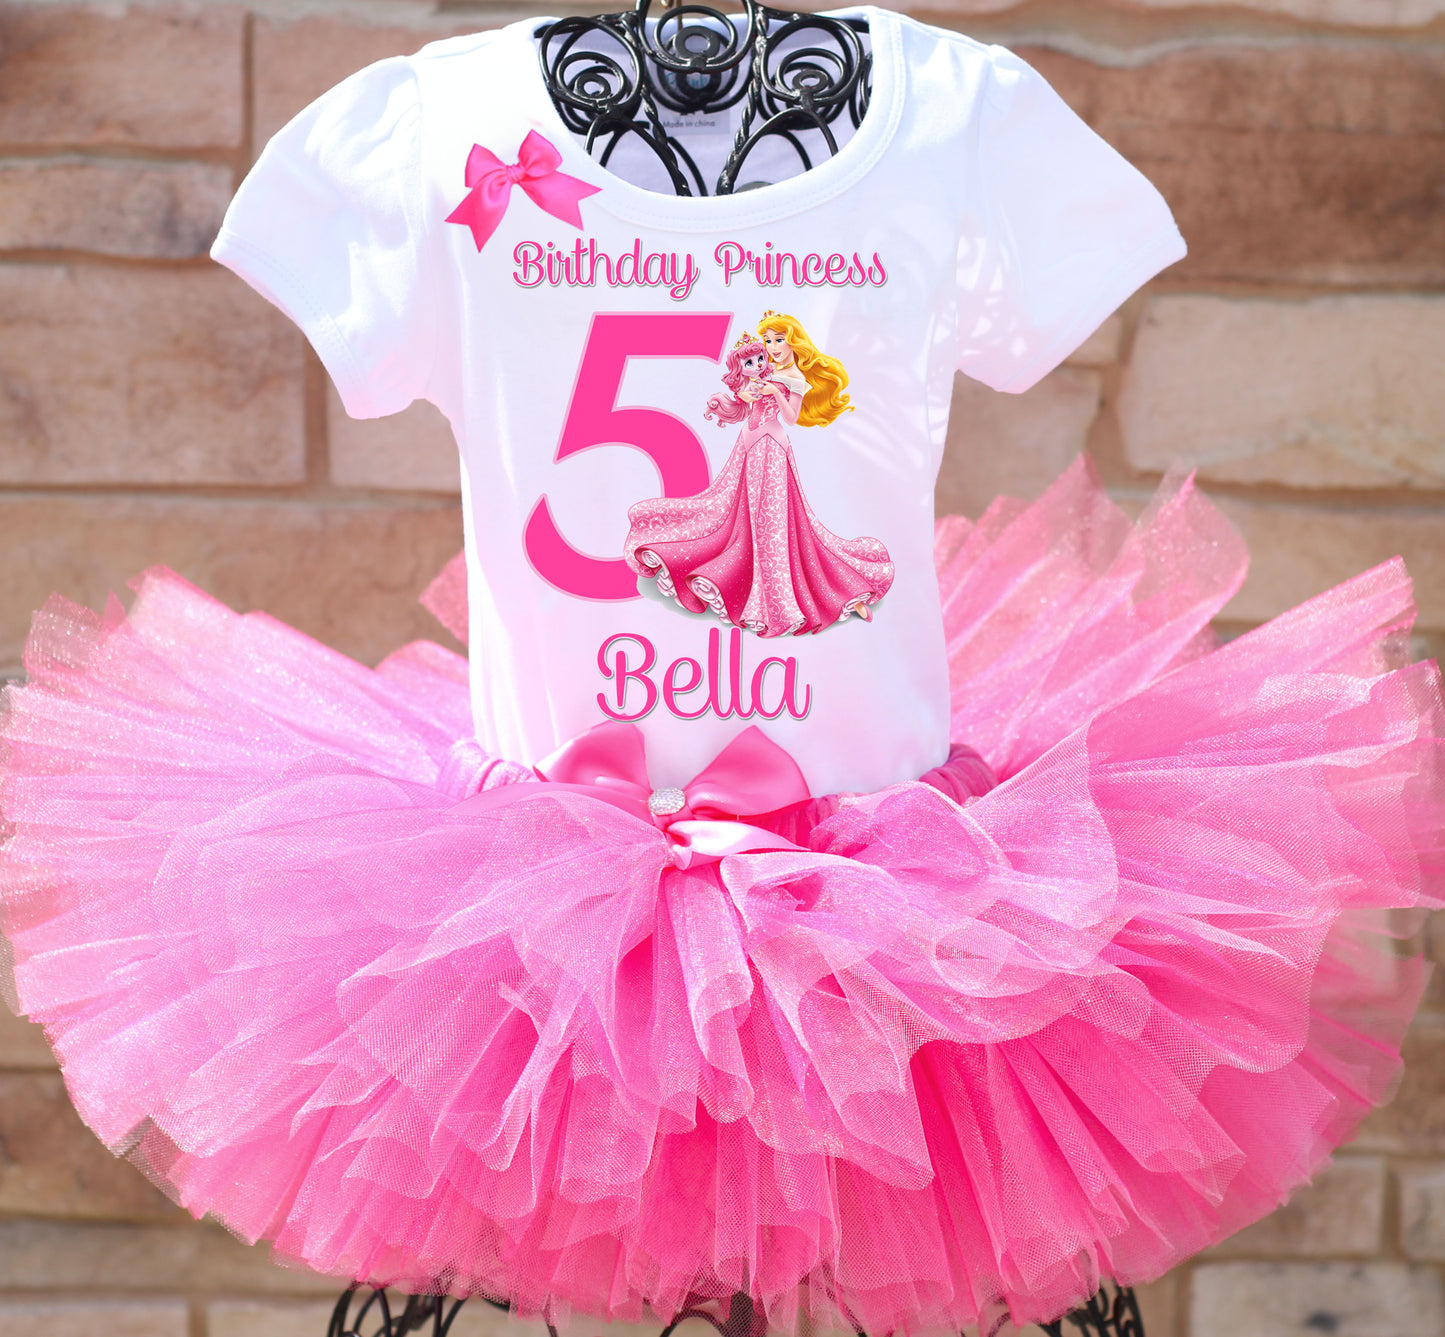 Princess Aurora birthday tutu outfit